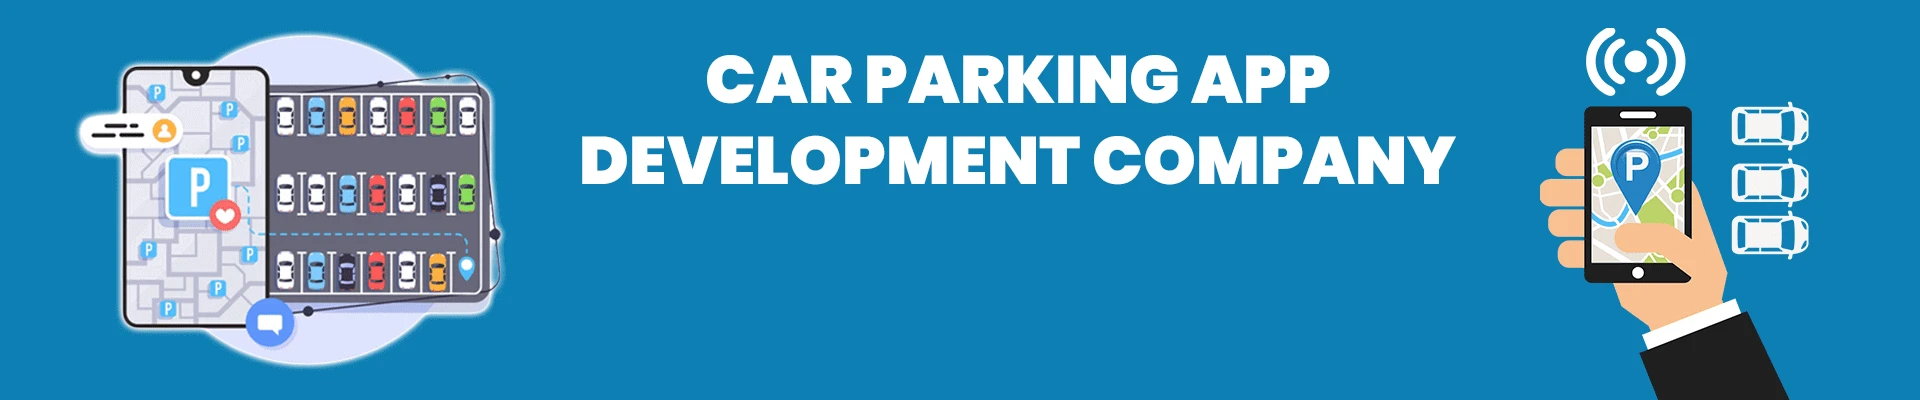 Car Parking App Development Company | Hire Car Parking App Developers